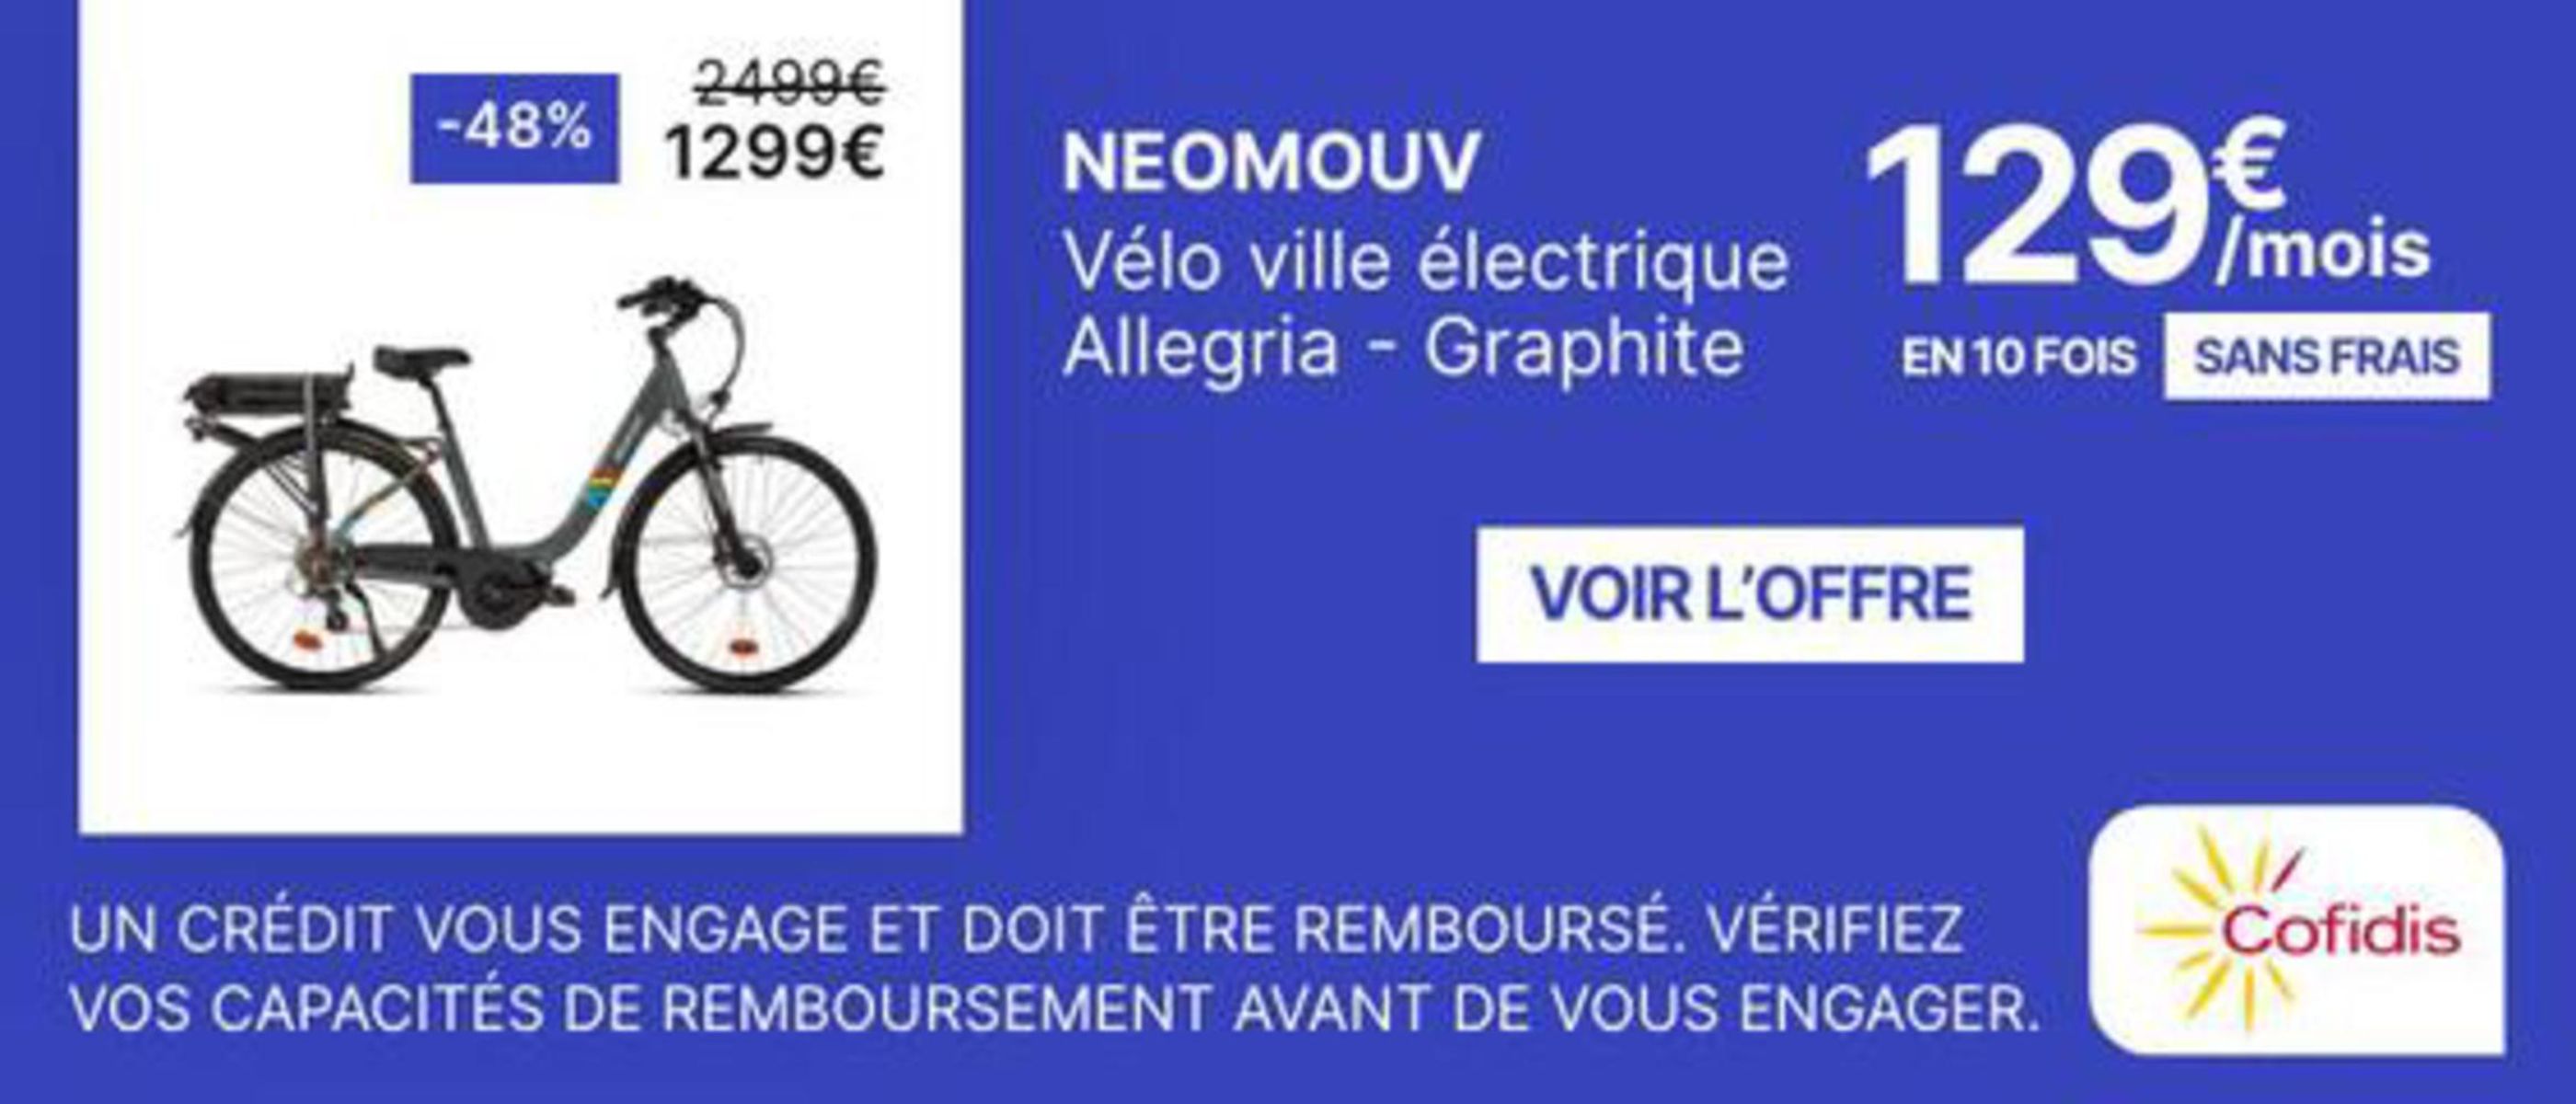 Catalogue Neomouv Vélo, page 00002